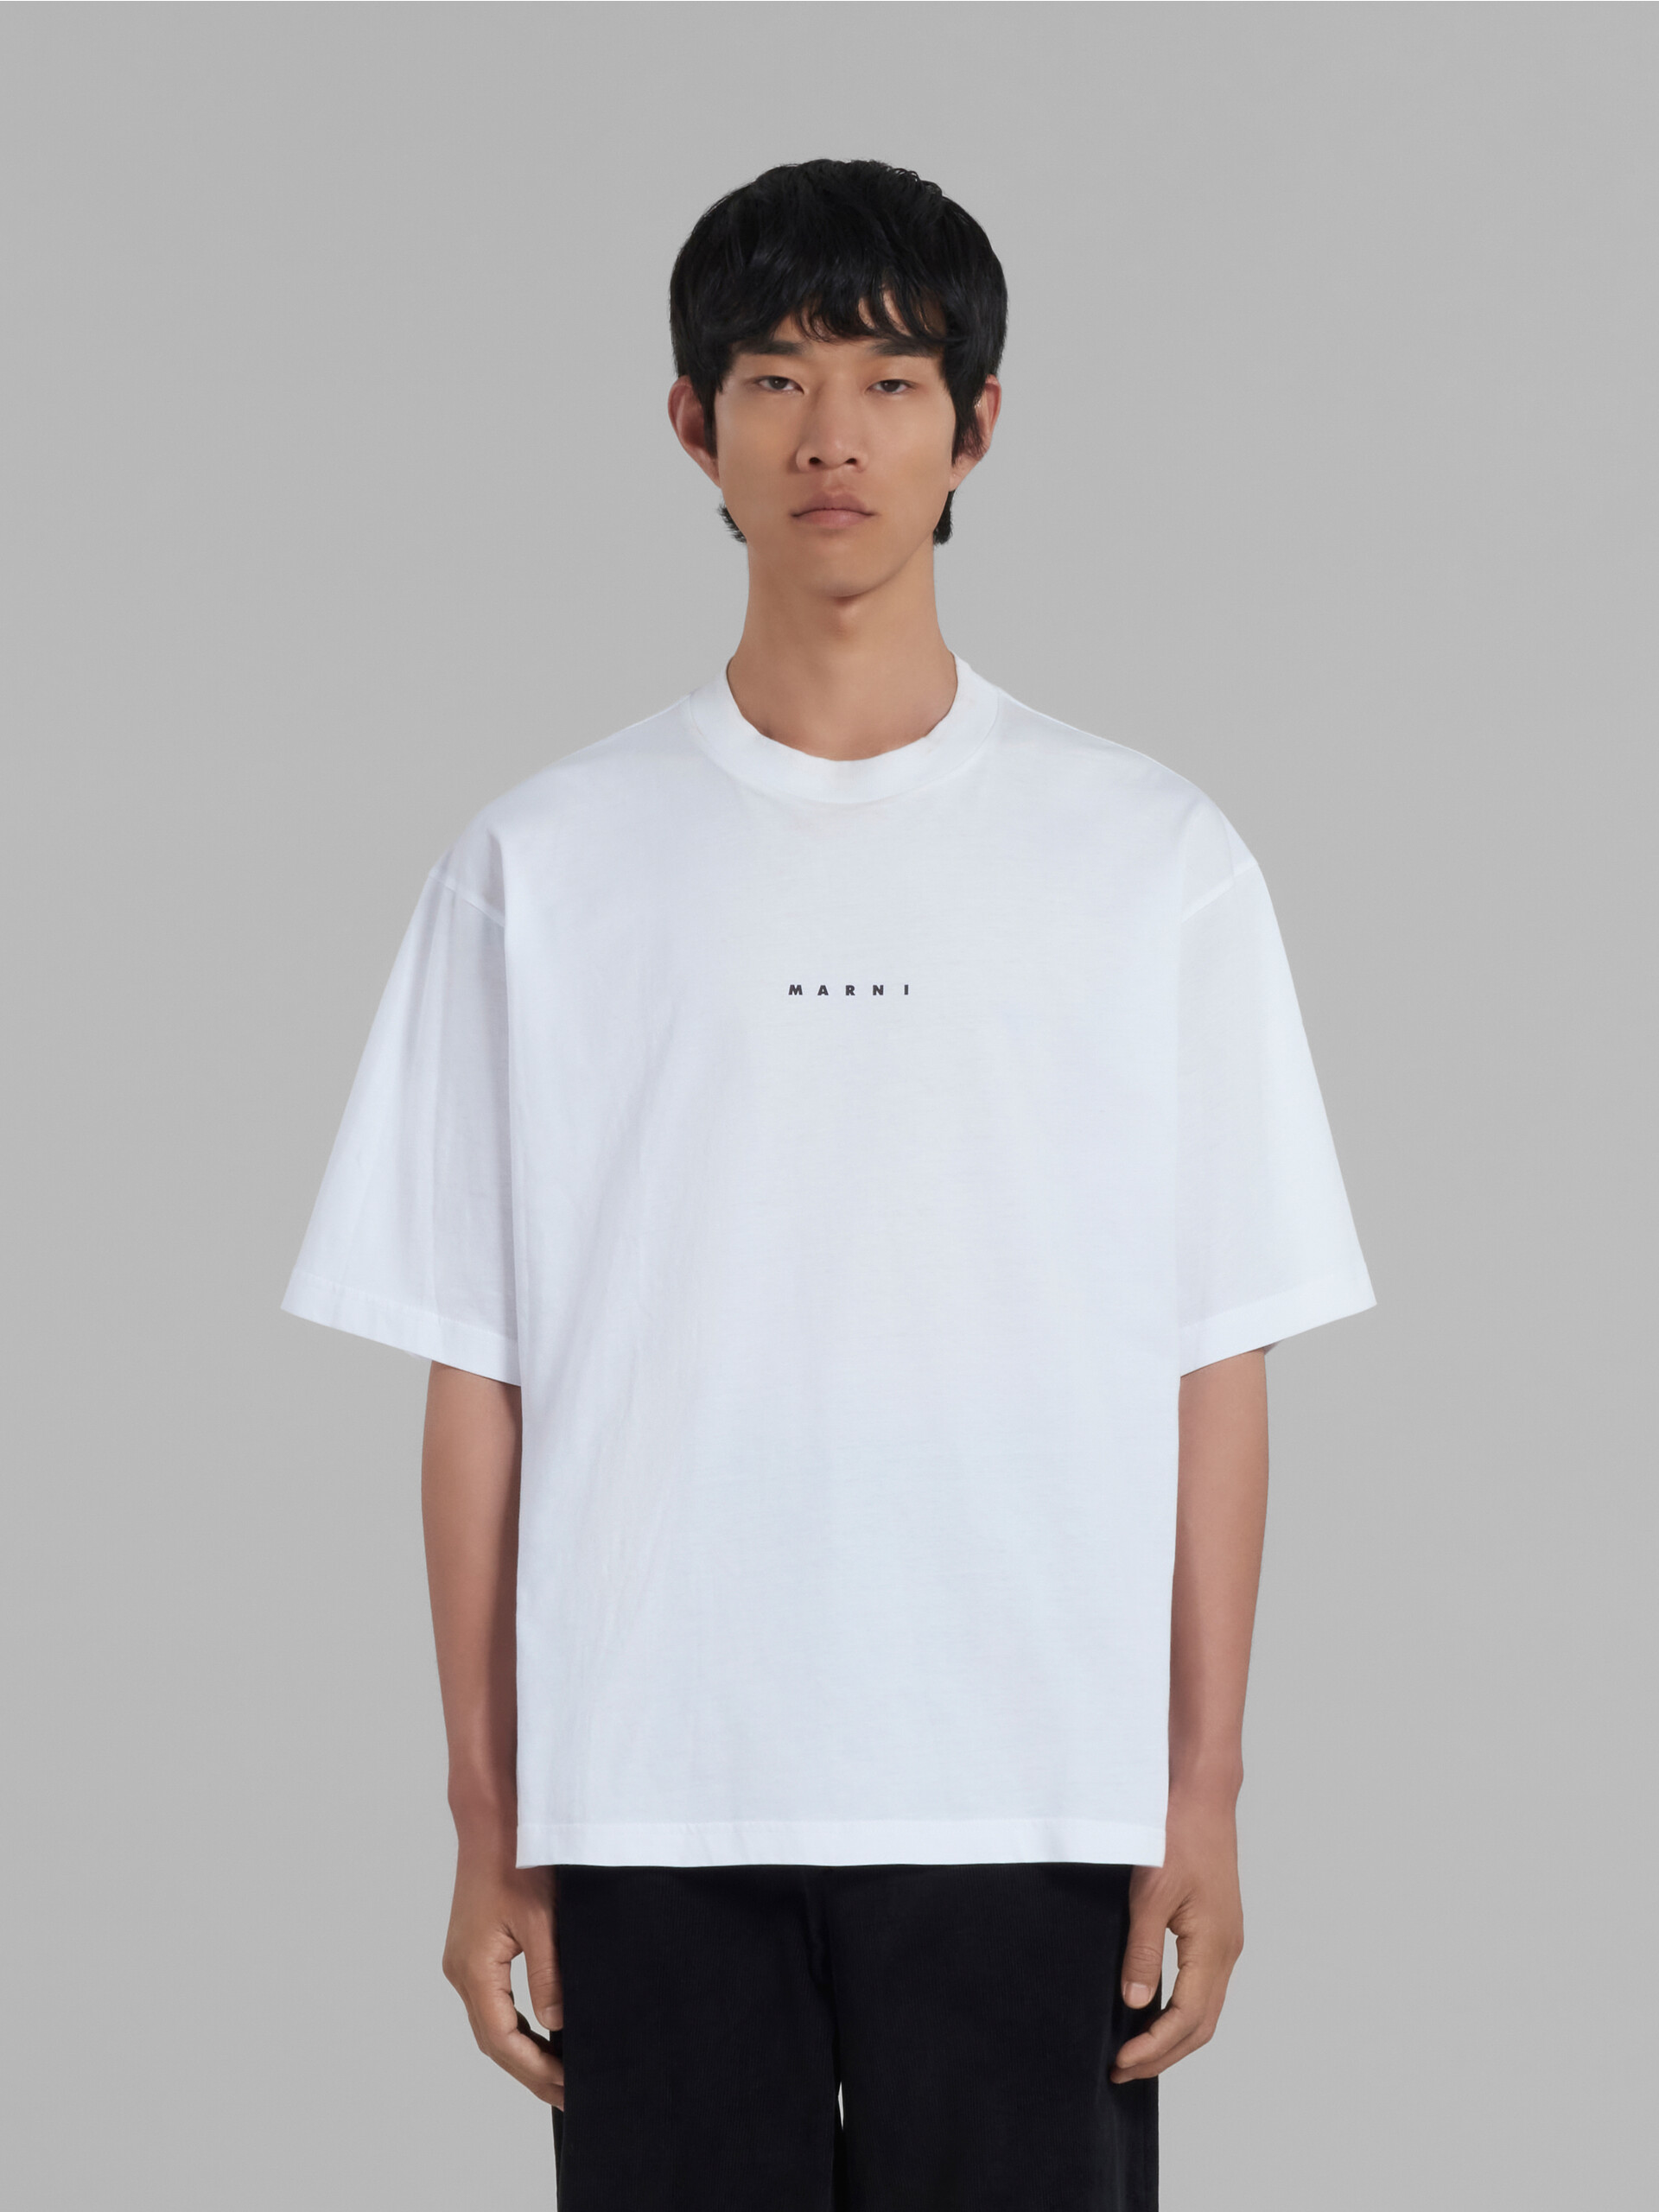 ピンク ロゴ入り オーガニックコットン Tシャツ(ボクシーフィット) - Tシャツ - Image 2